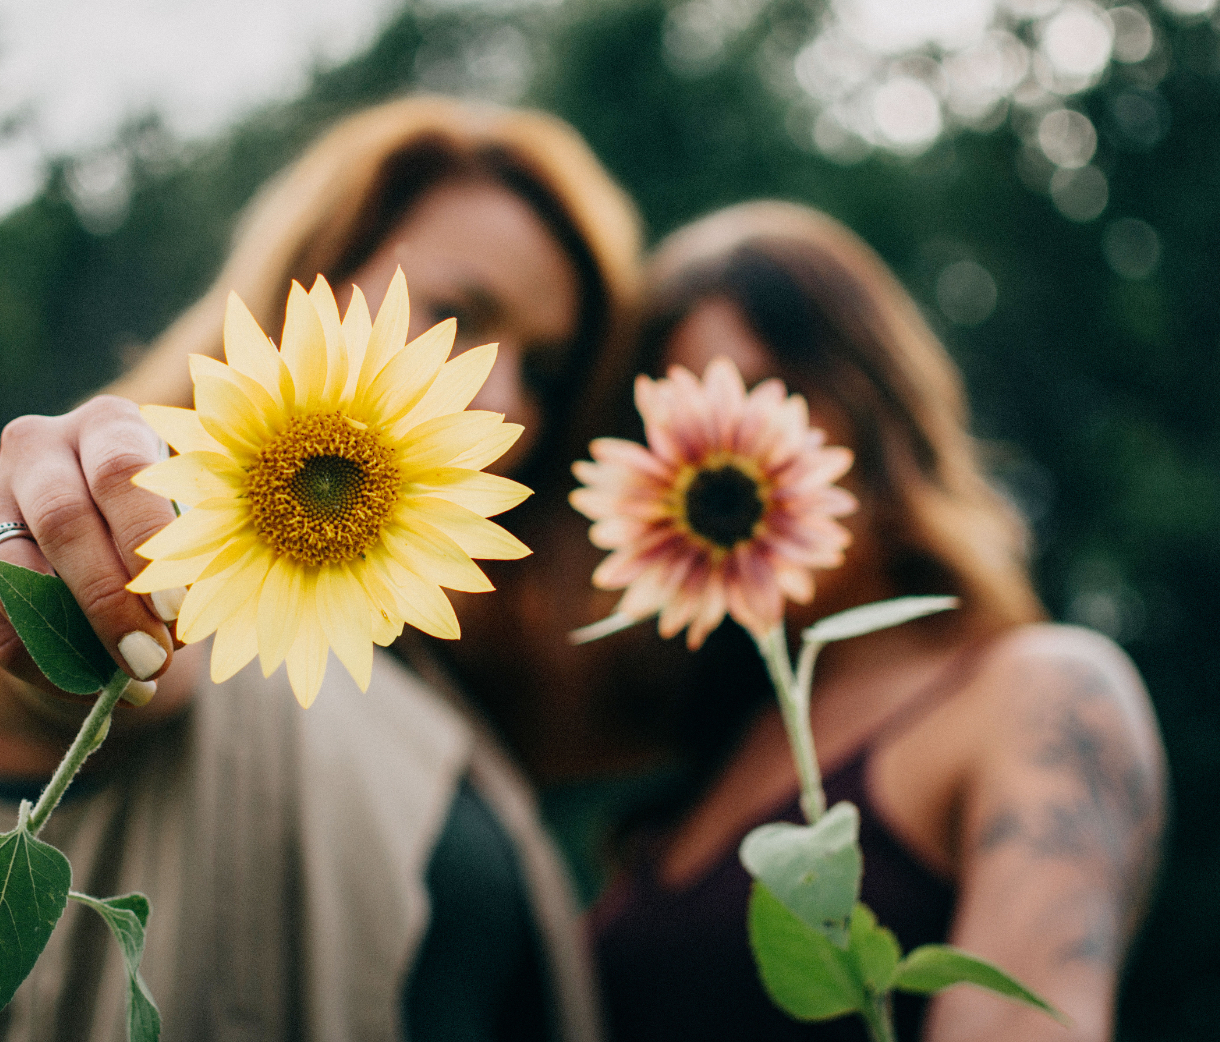 Deux jeunes femmes se donnant un câlin, tenant dans leurs mains des fleurs (tournesols) roses et jaunes. L'une des femmes est tattouée et l'autre porte des bagues aux doigts.